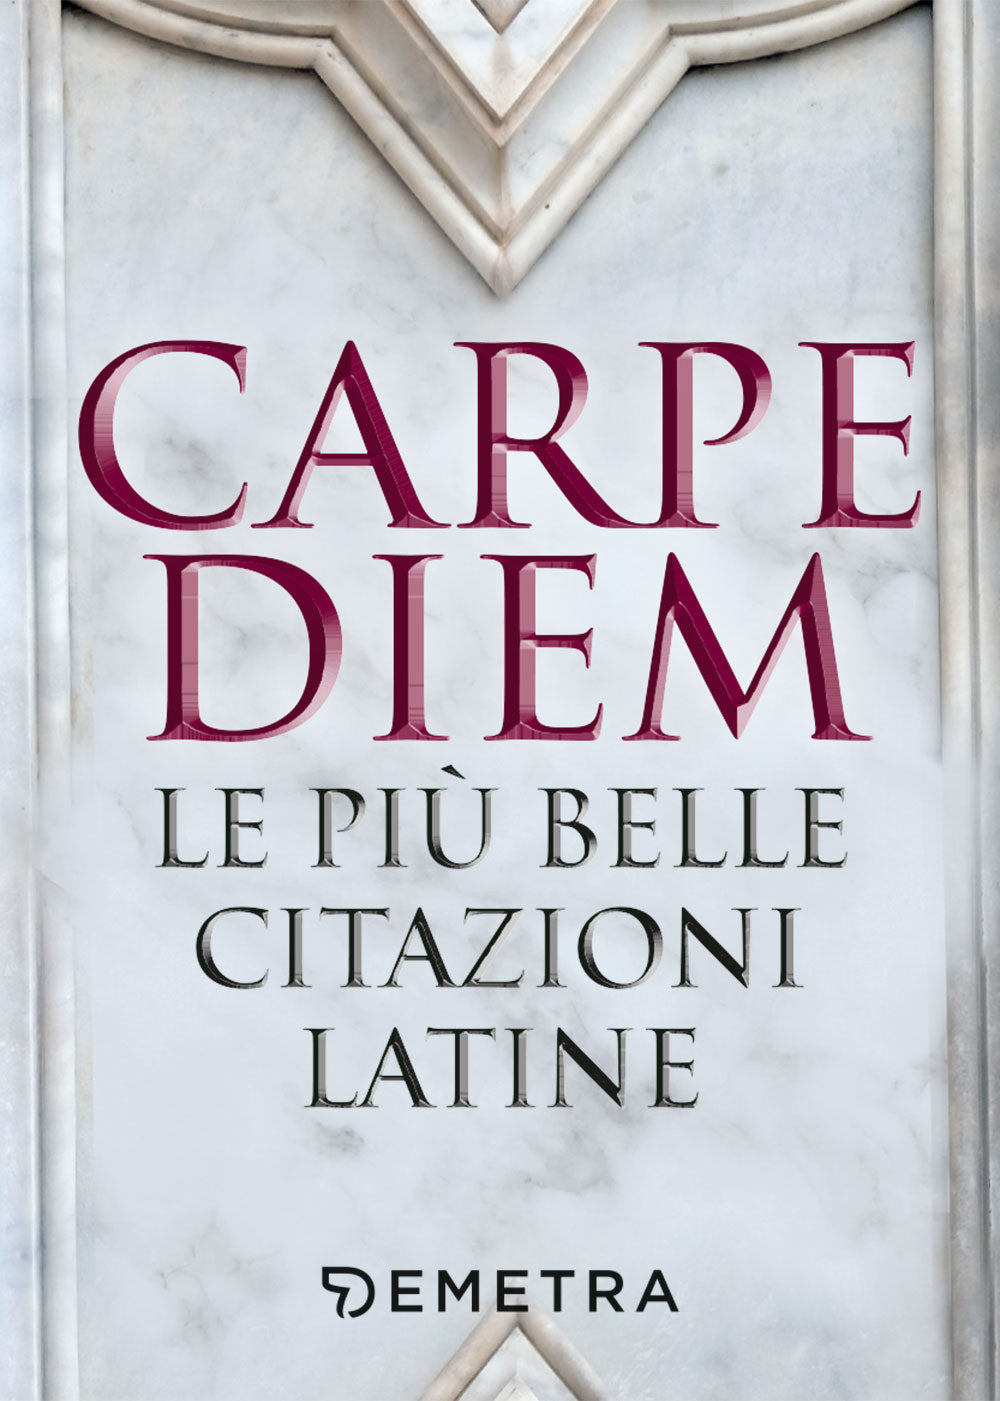 Carpe diem::Le più belle citazioni latine